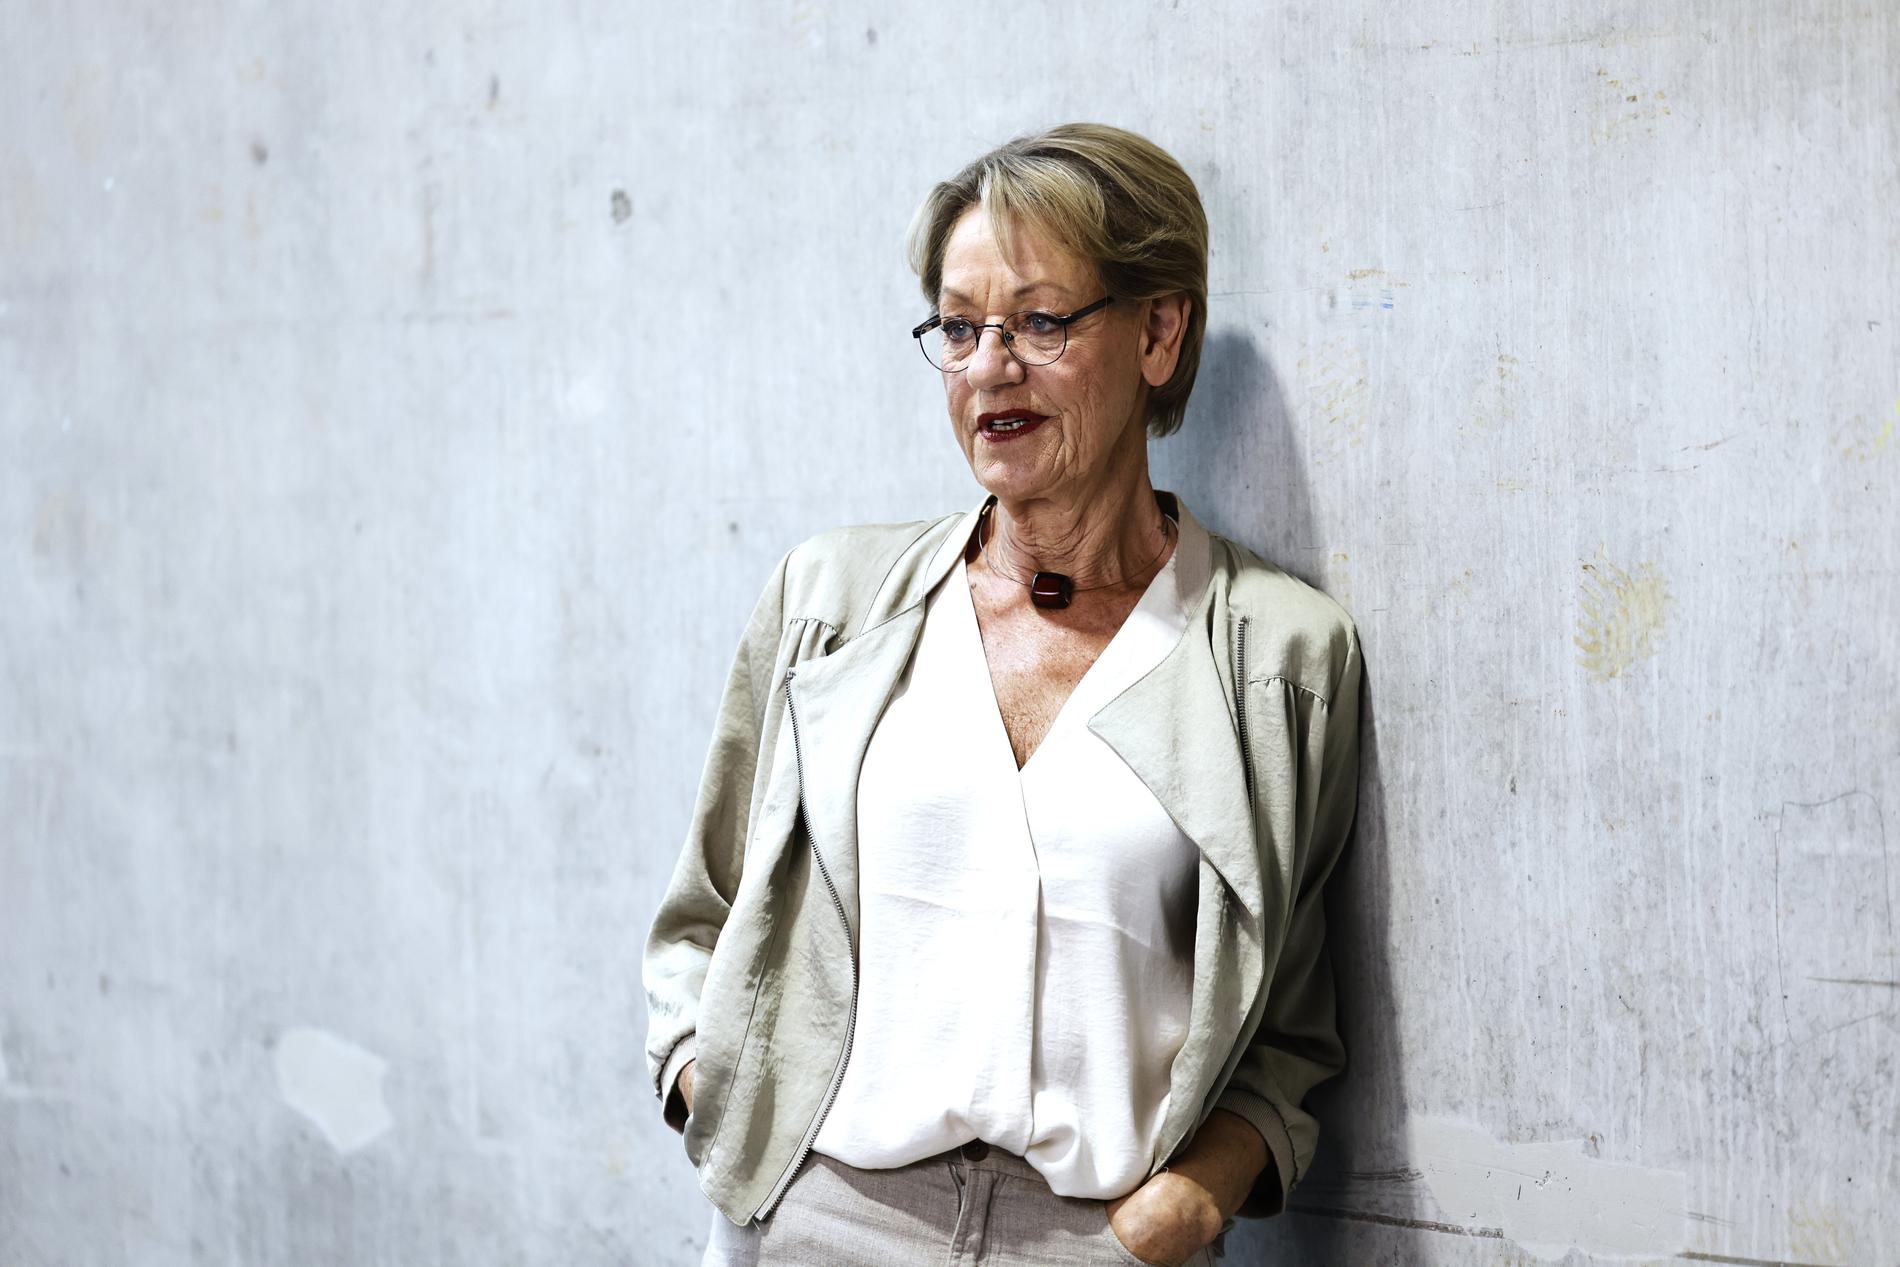 Gudrun Schyman efterlyser en fredsförhandling mellan Ukraina och Ryssland, säger hon i Sveriges Radio.